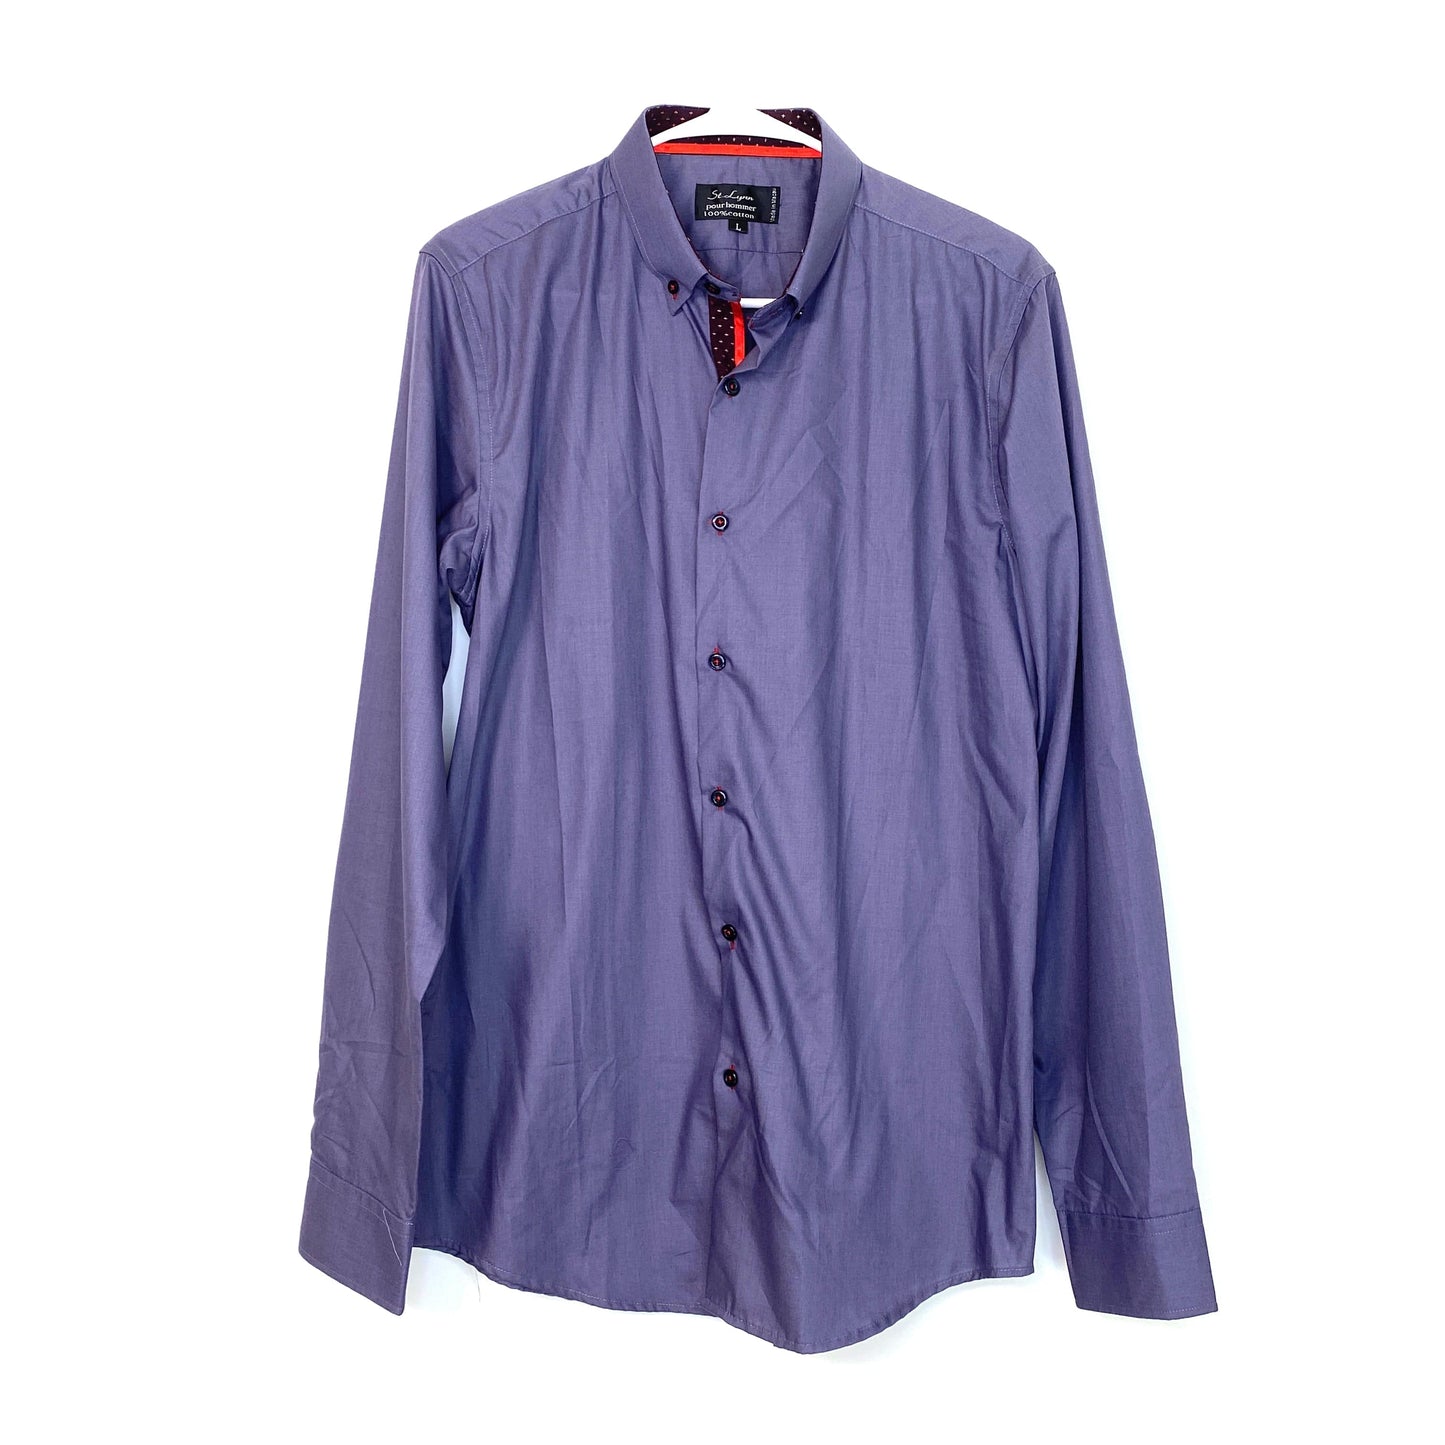 St. Lynn pour hommer Mens Size L Purple Dress Shirt Button-Up L/s